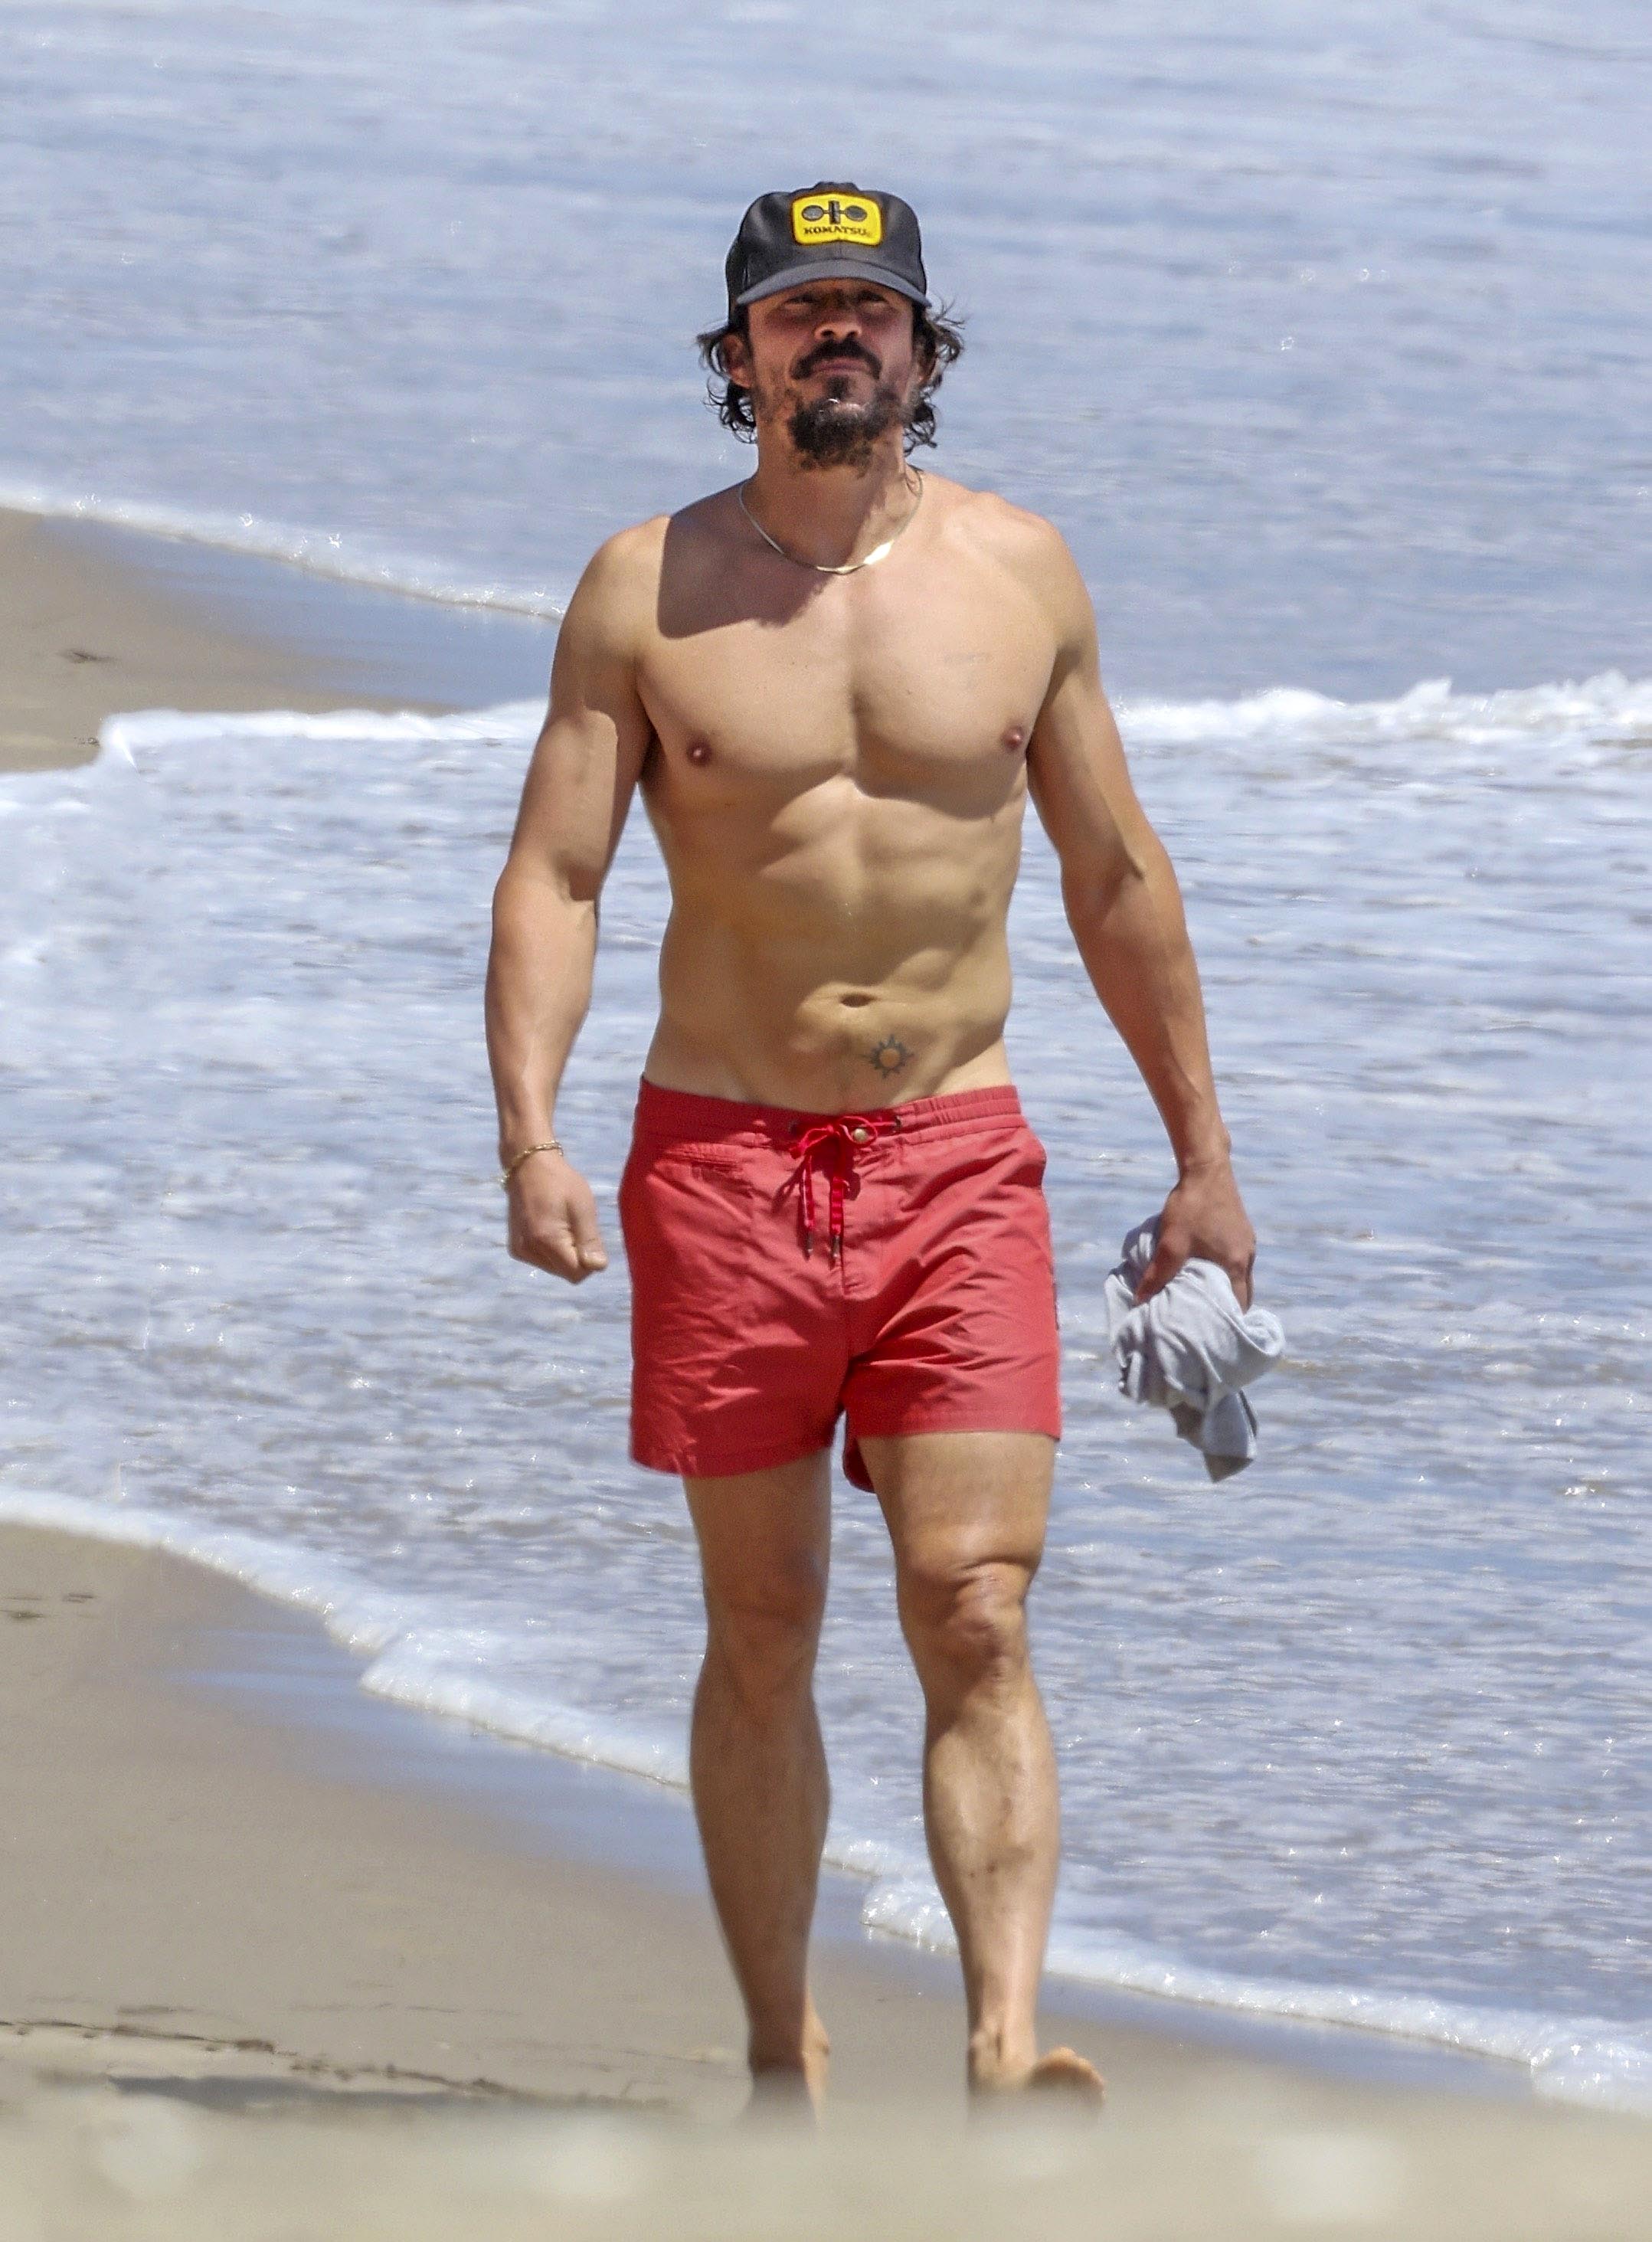 Orgulloso de las horas que invierte entrenando y con una barba desaliñada típica de vacaciones, Orlando Bloom mostró su abdomen marcado mientras disfruta de la playa en Santa Bárbara